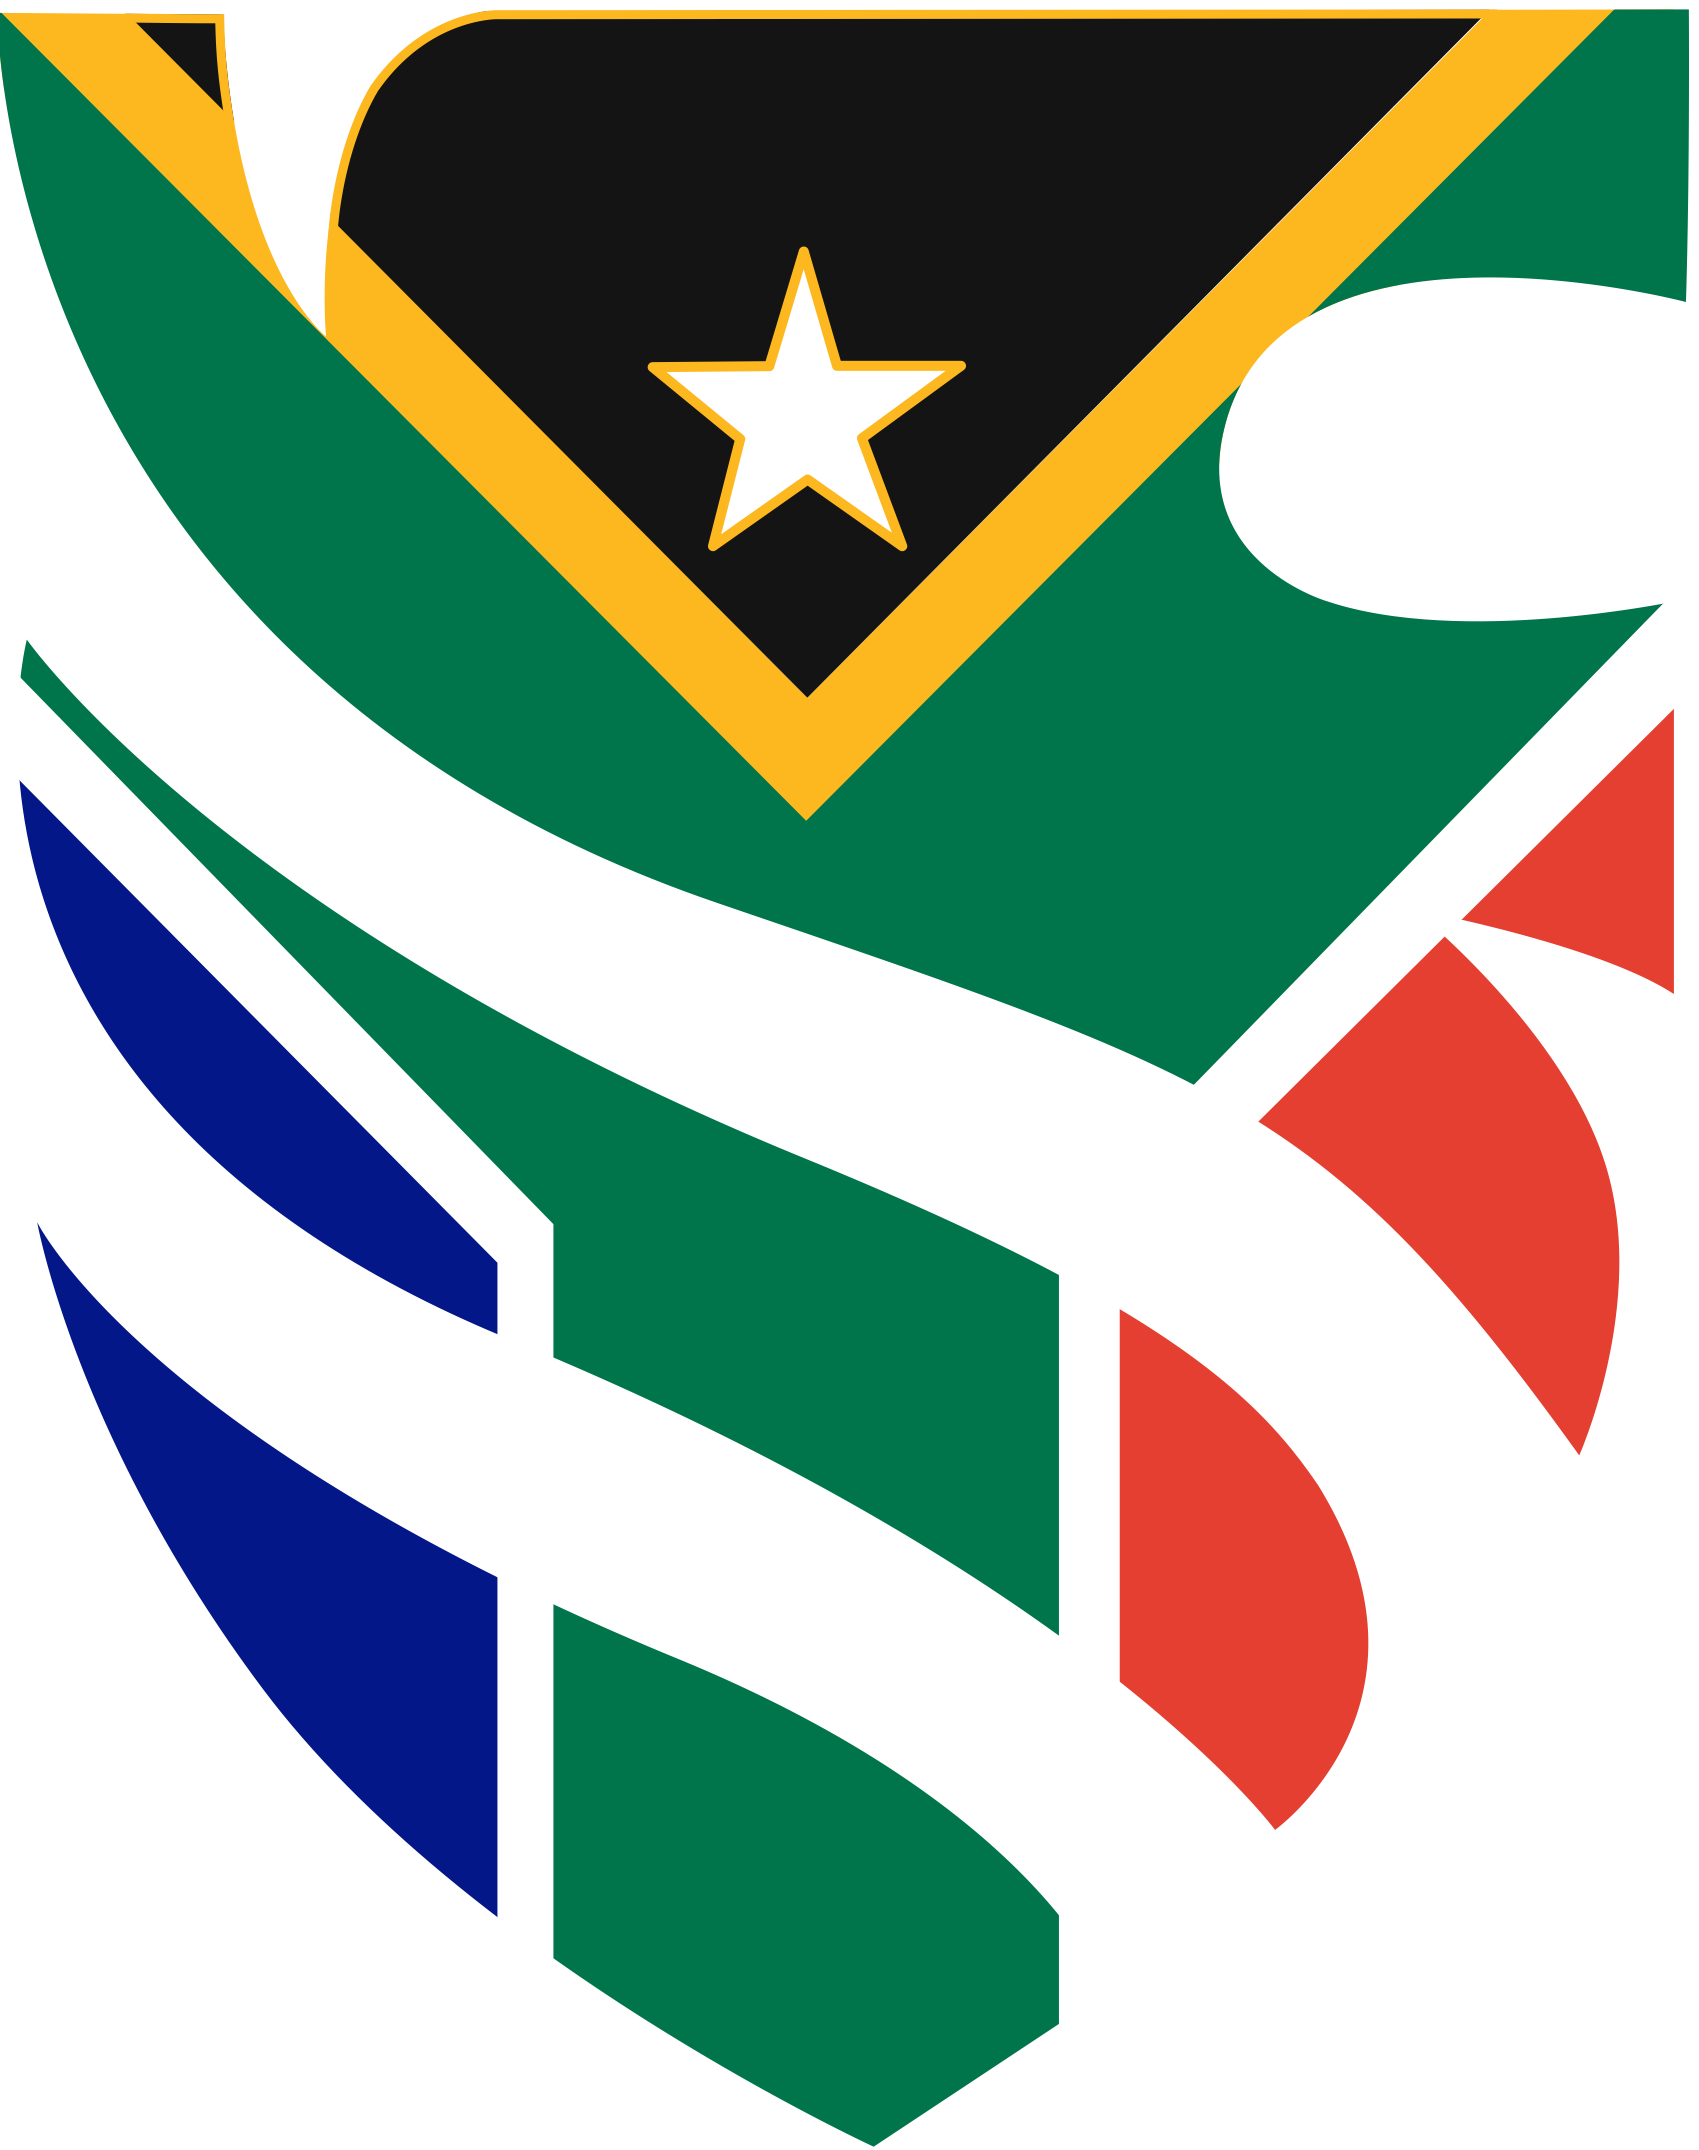 School of Kingdom South Africa